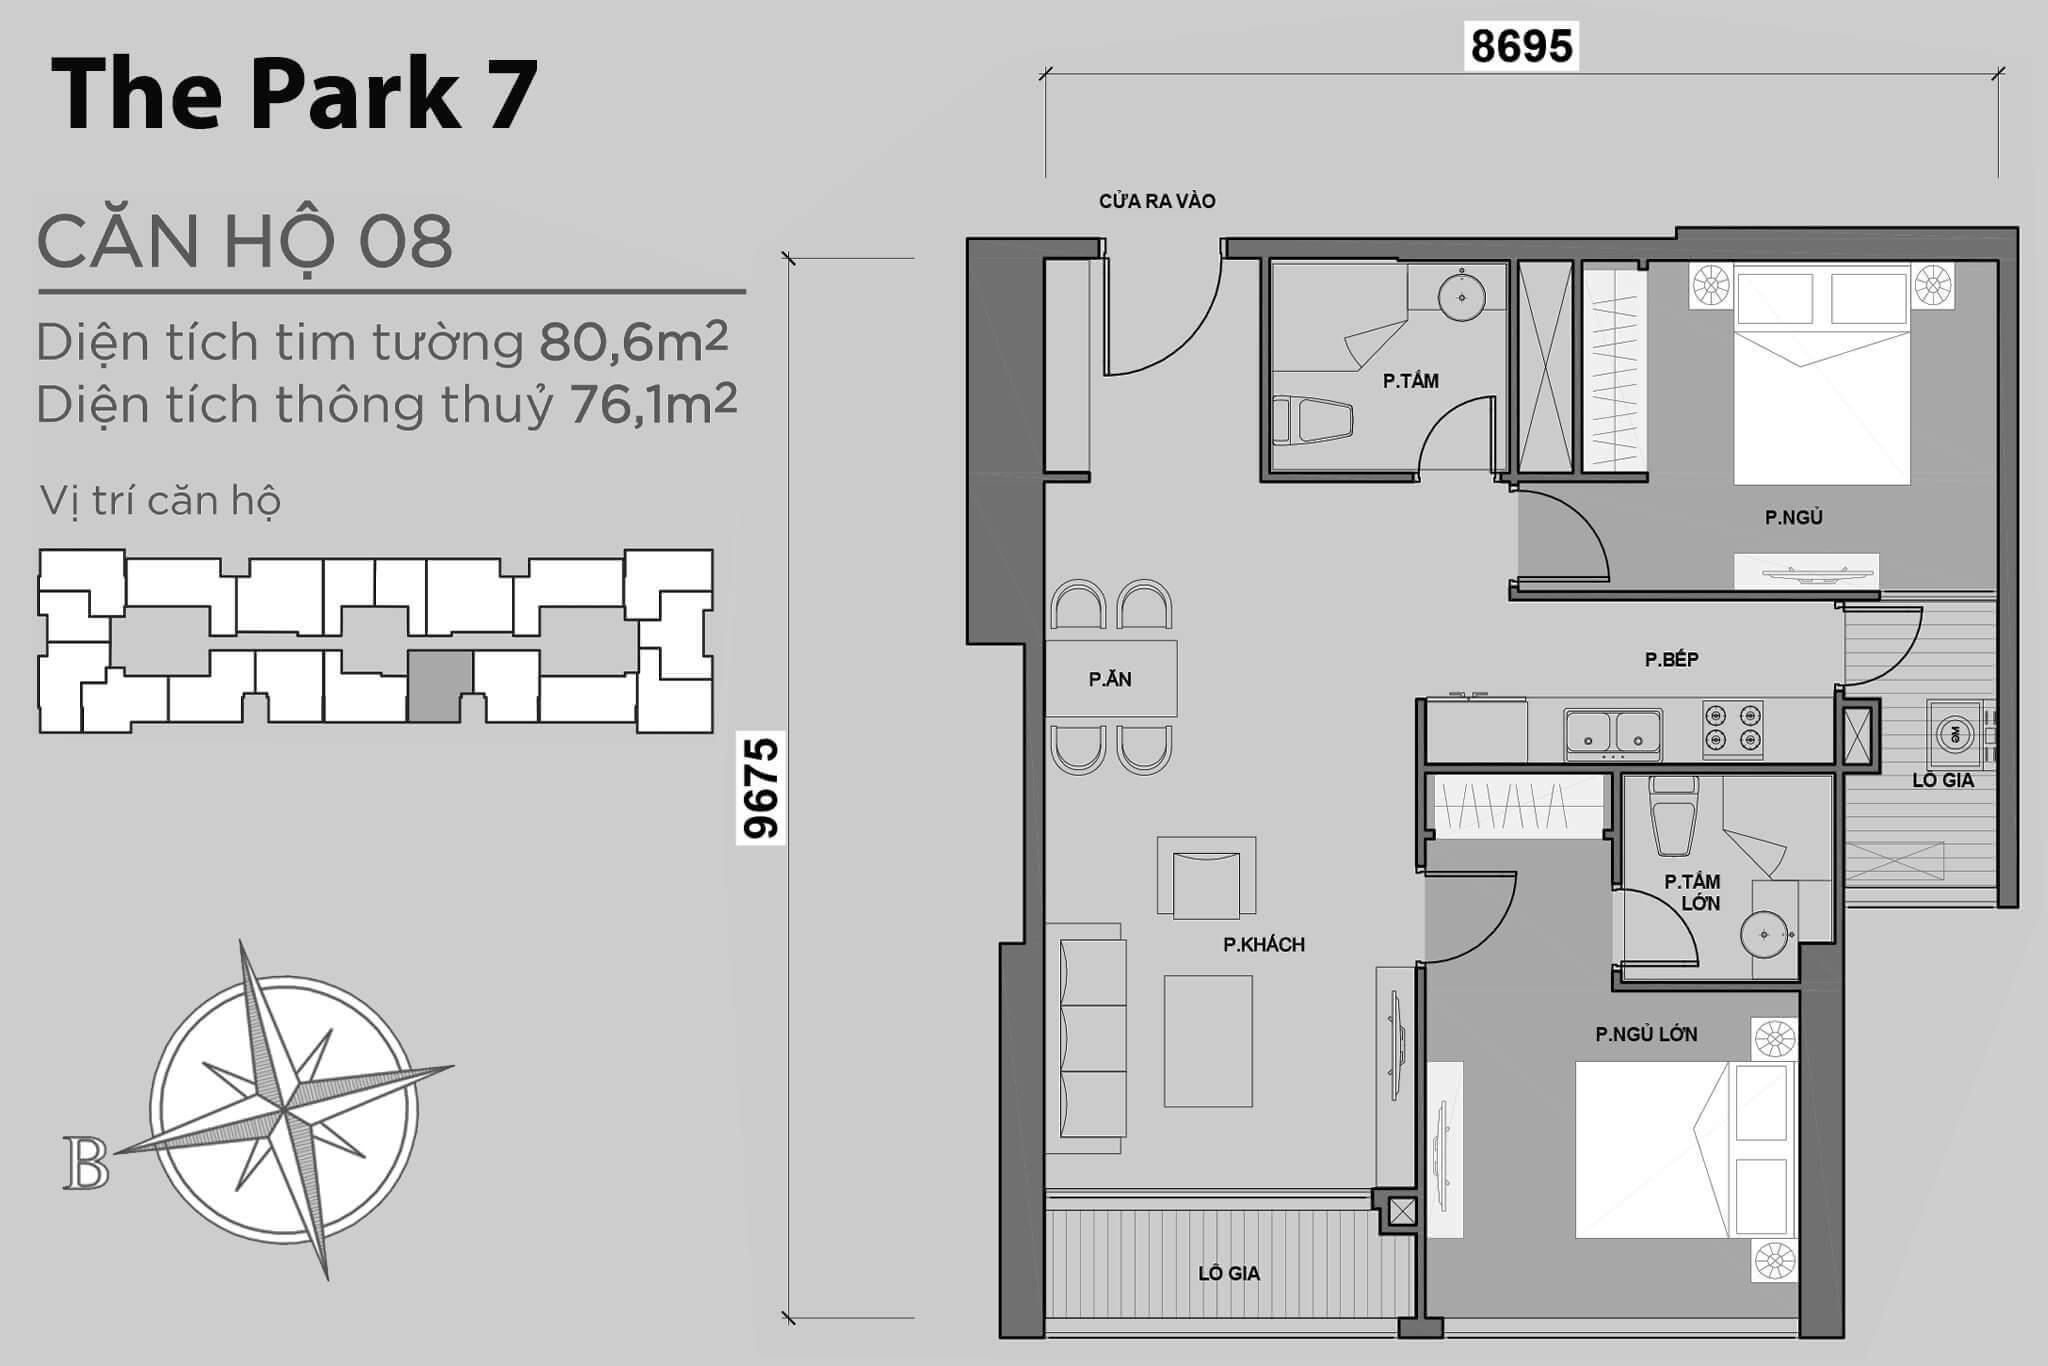 layout căn hộ số 08 tòa Park 7 P7-08